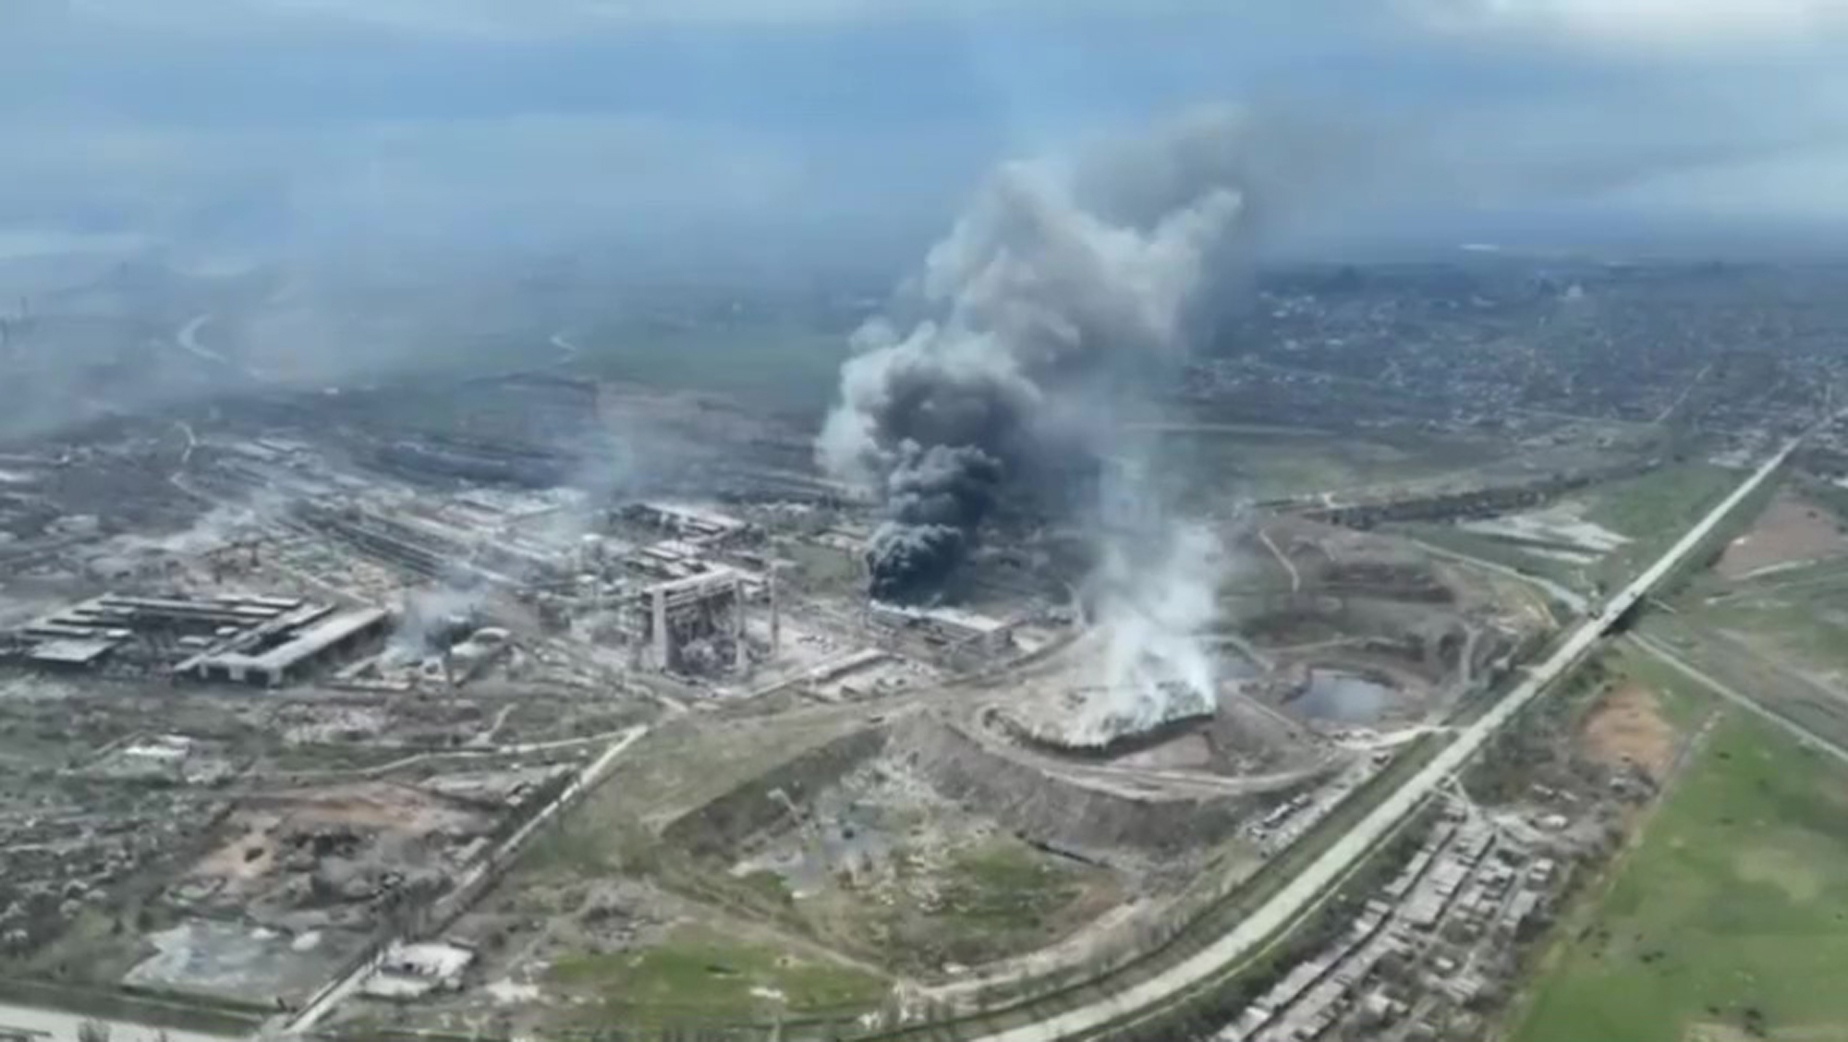 Op beelden is te zien hoe de Azovstal-staalfabriek in Marioepol, waar de laatste Oekraïense troepen in de stad zitten, gebombardeerd wordt door de Russen.